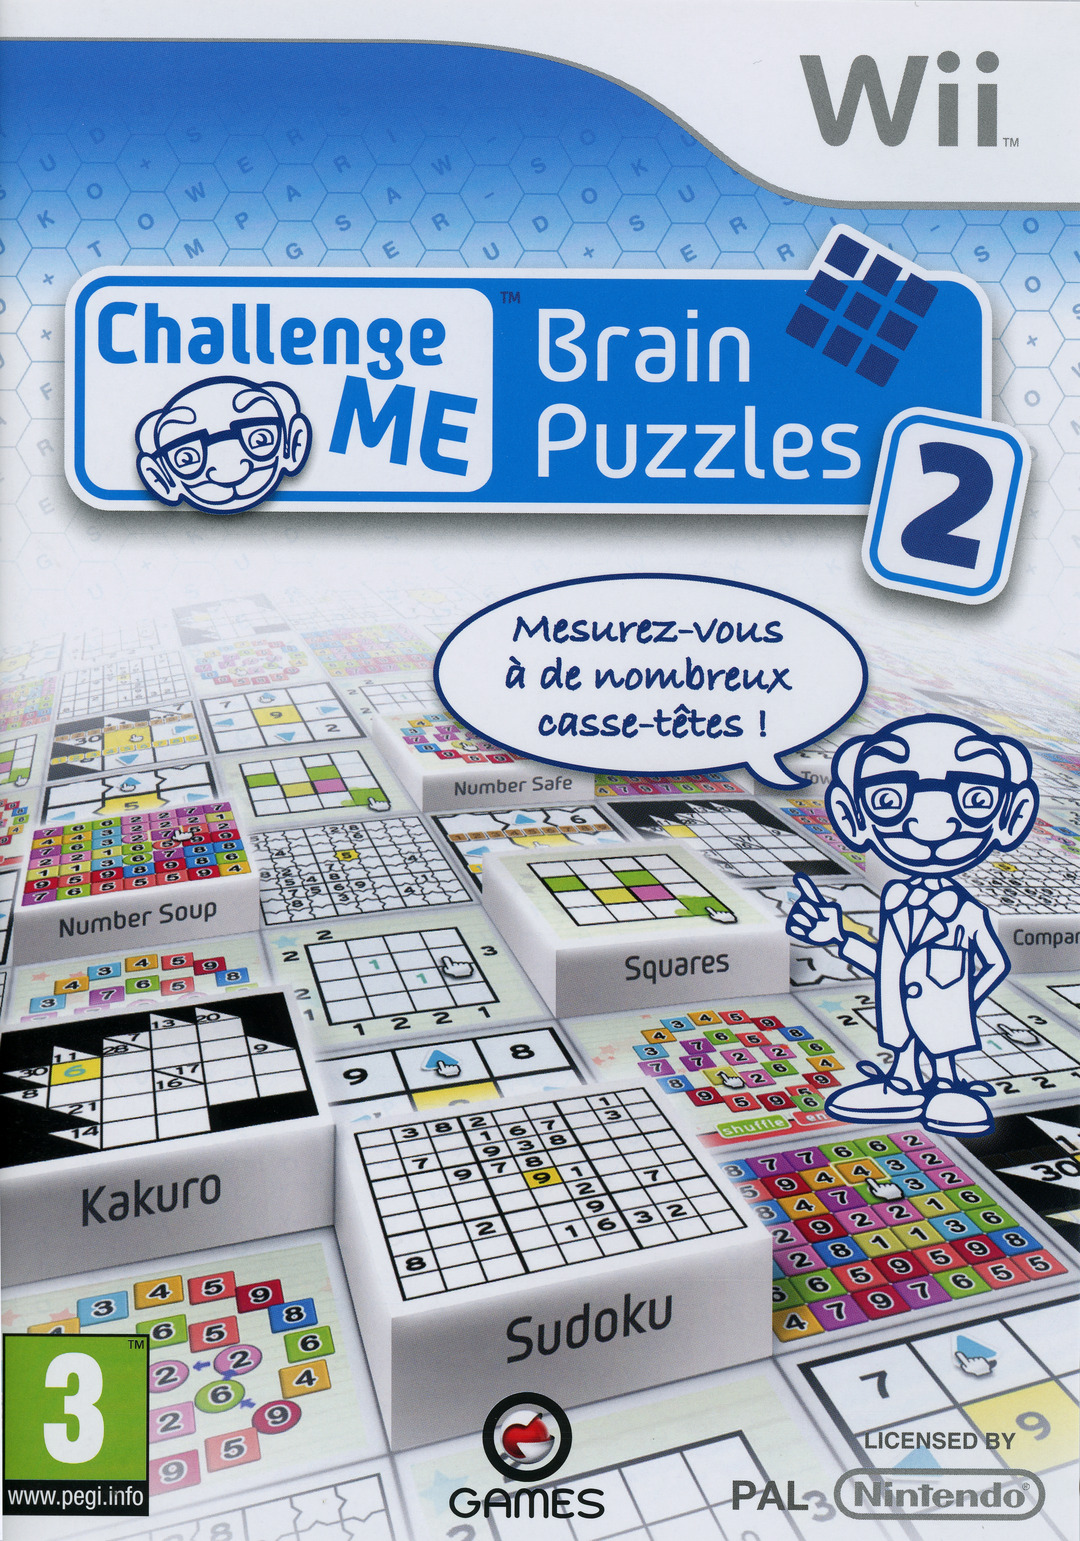 Brain Puzzle игра. Головоломка NDS. Nintendo DS головоломка. Brain Puzzles логические игры.